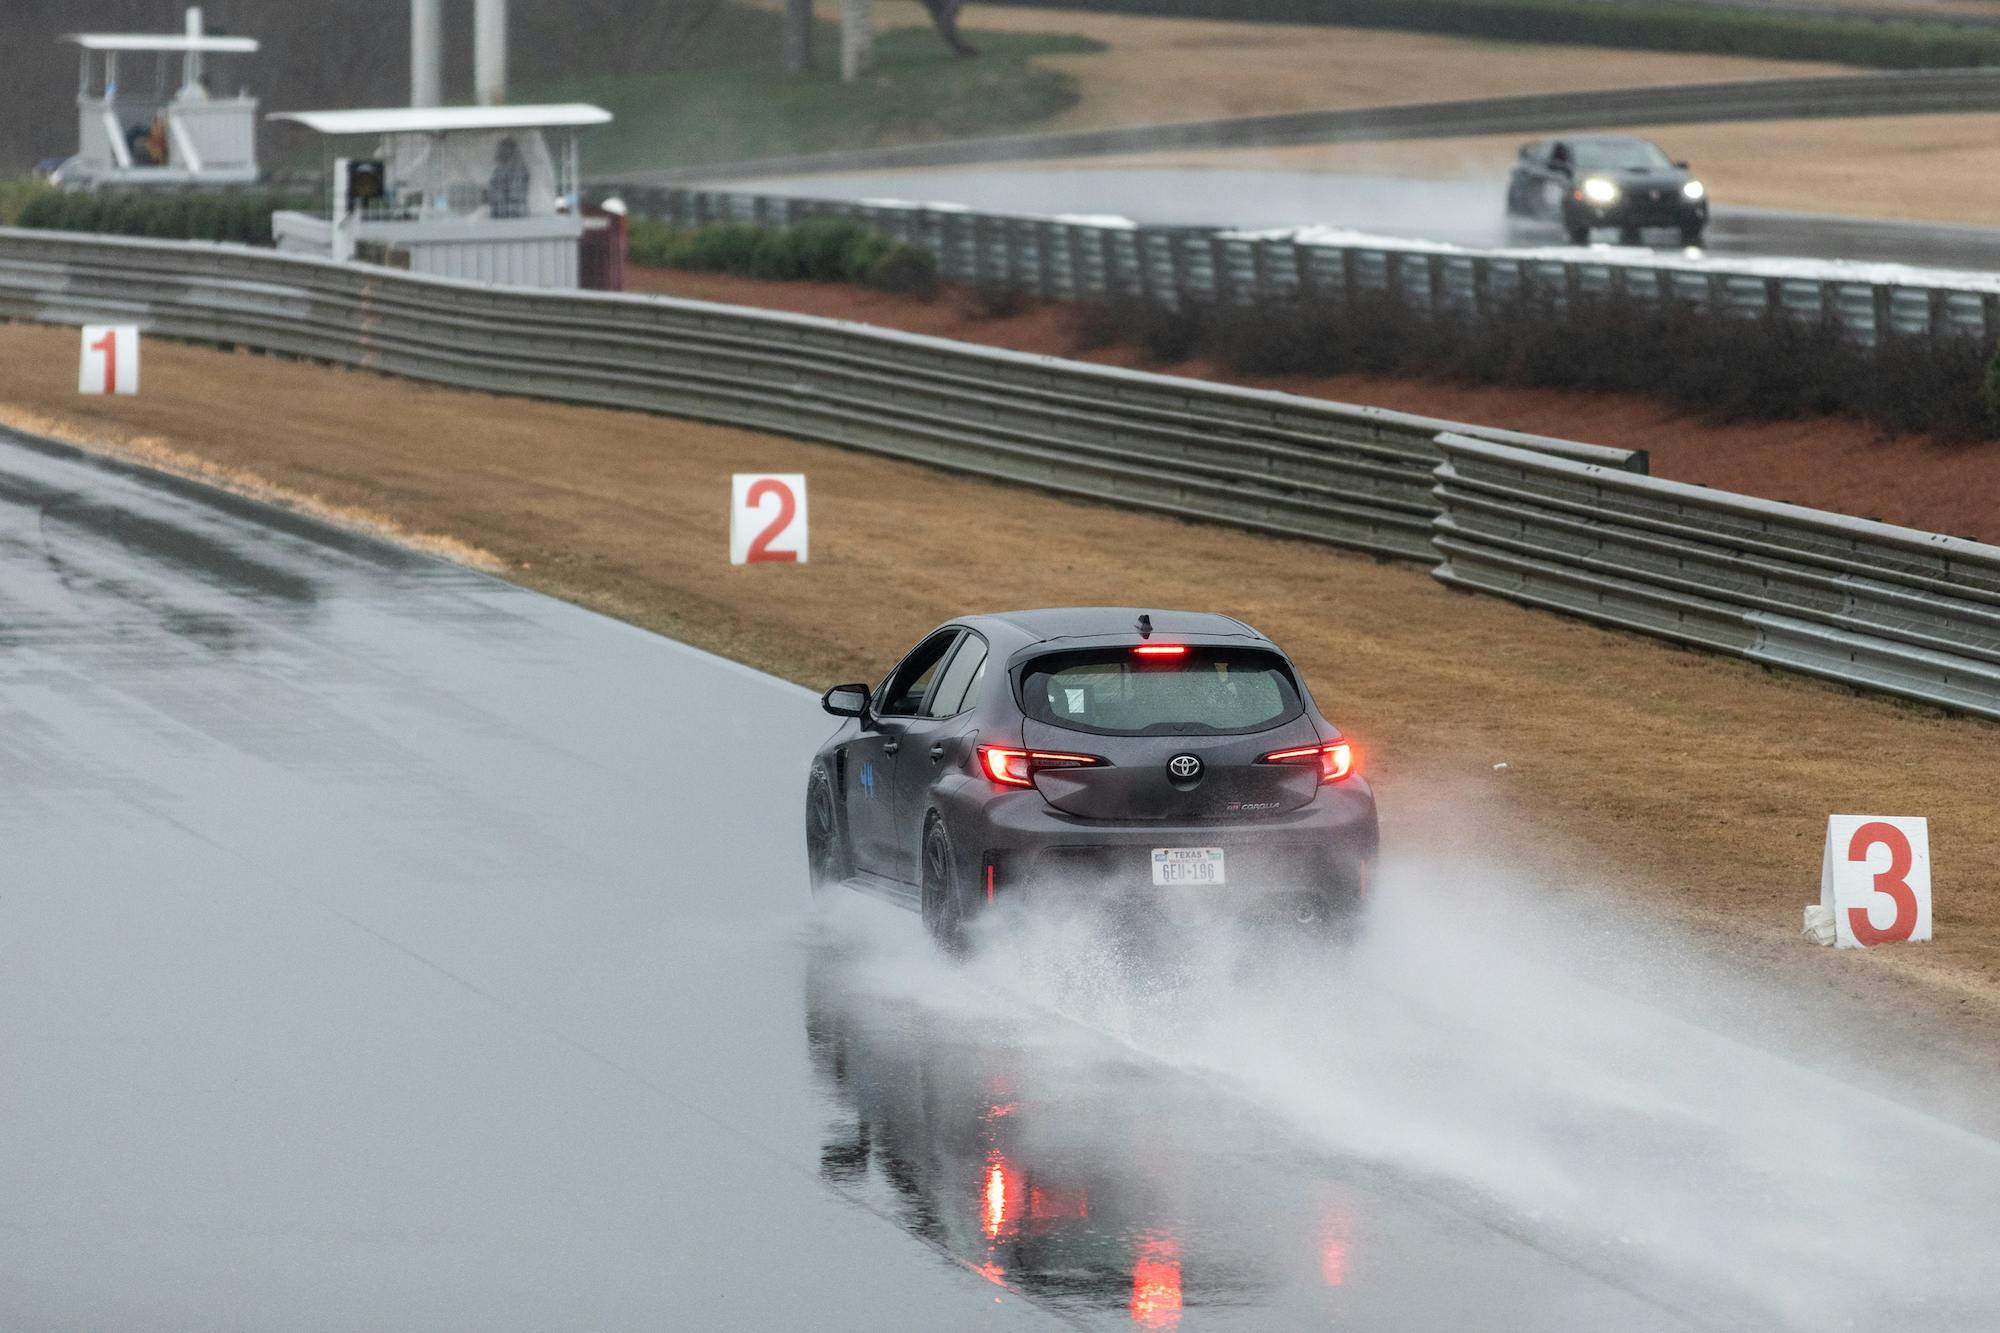 2023 Toyota GR Corolla Morizo edition track test in rain